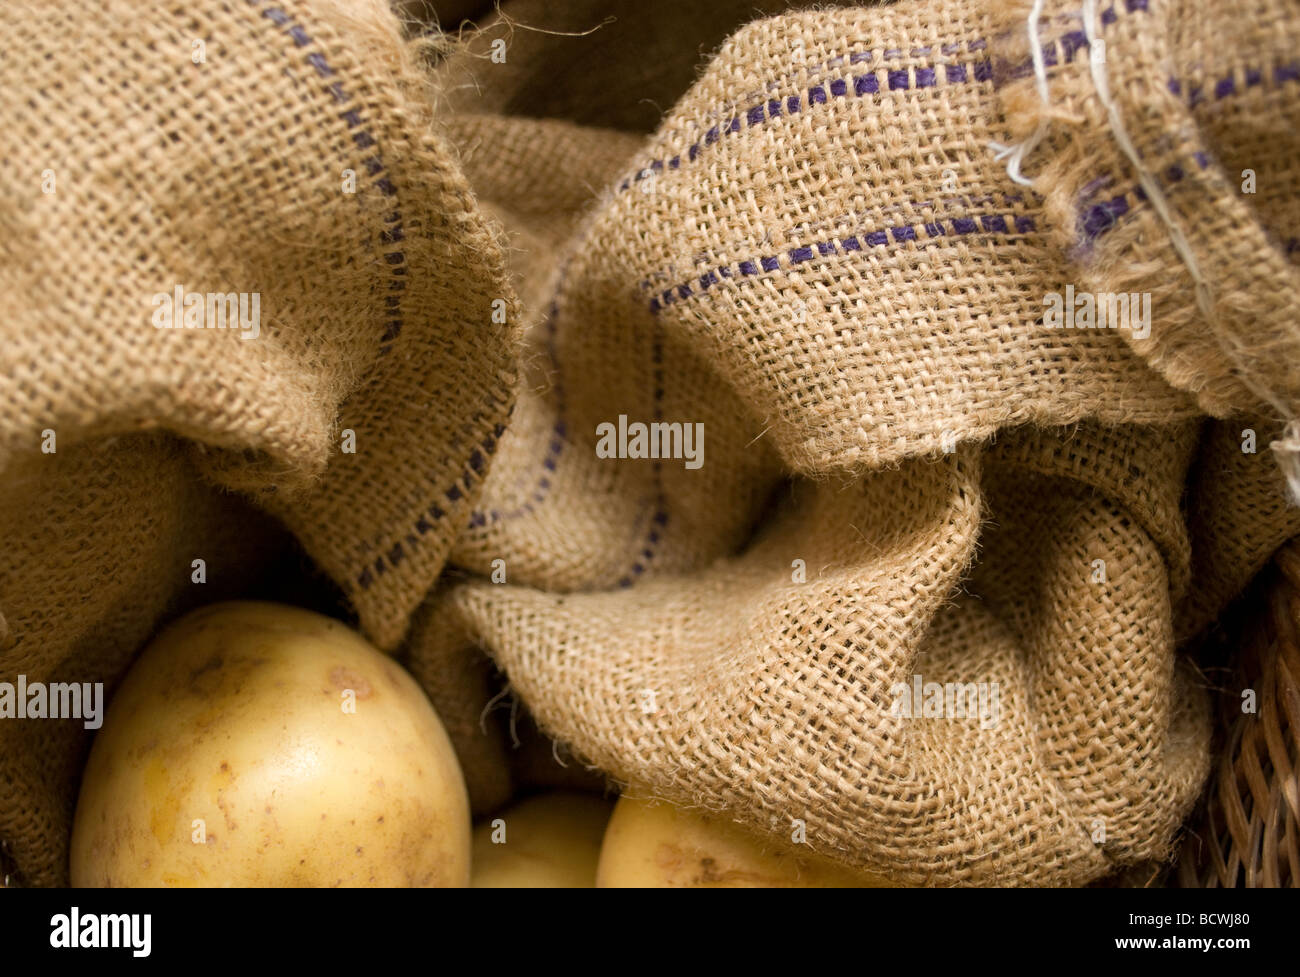 Kartoffeln im hessischen in einem Korb gehalten. Stockfoto